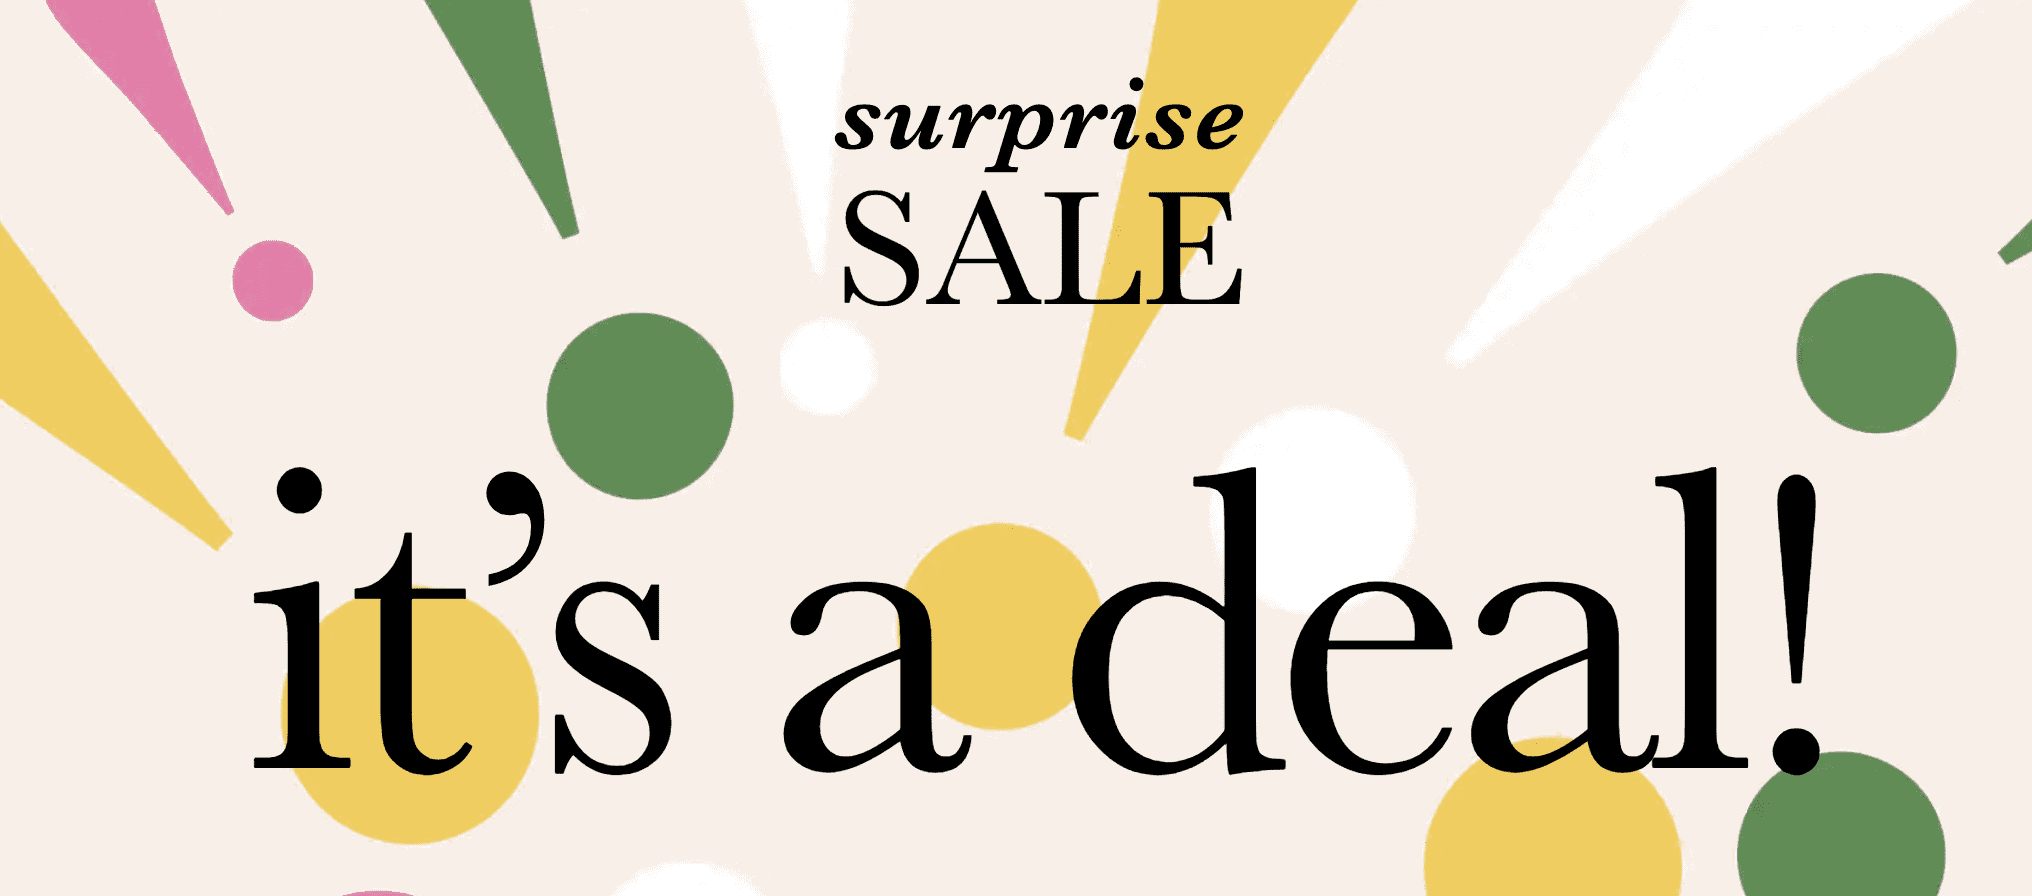 Kate Spade Surprise Summer Sale 2021: Best Deals to Shop